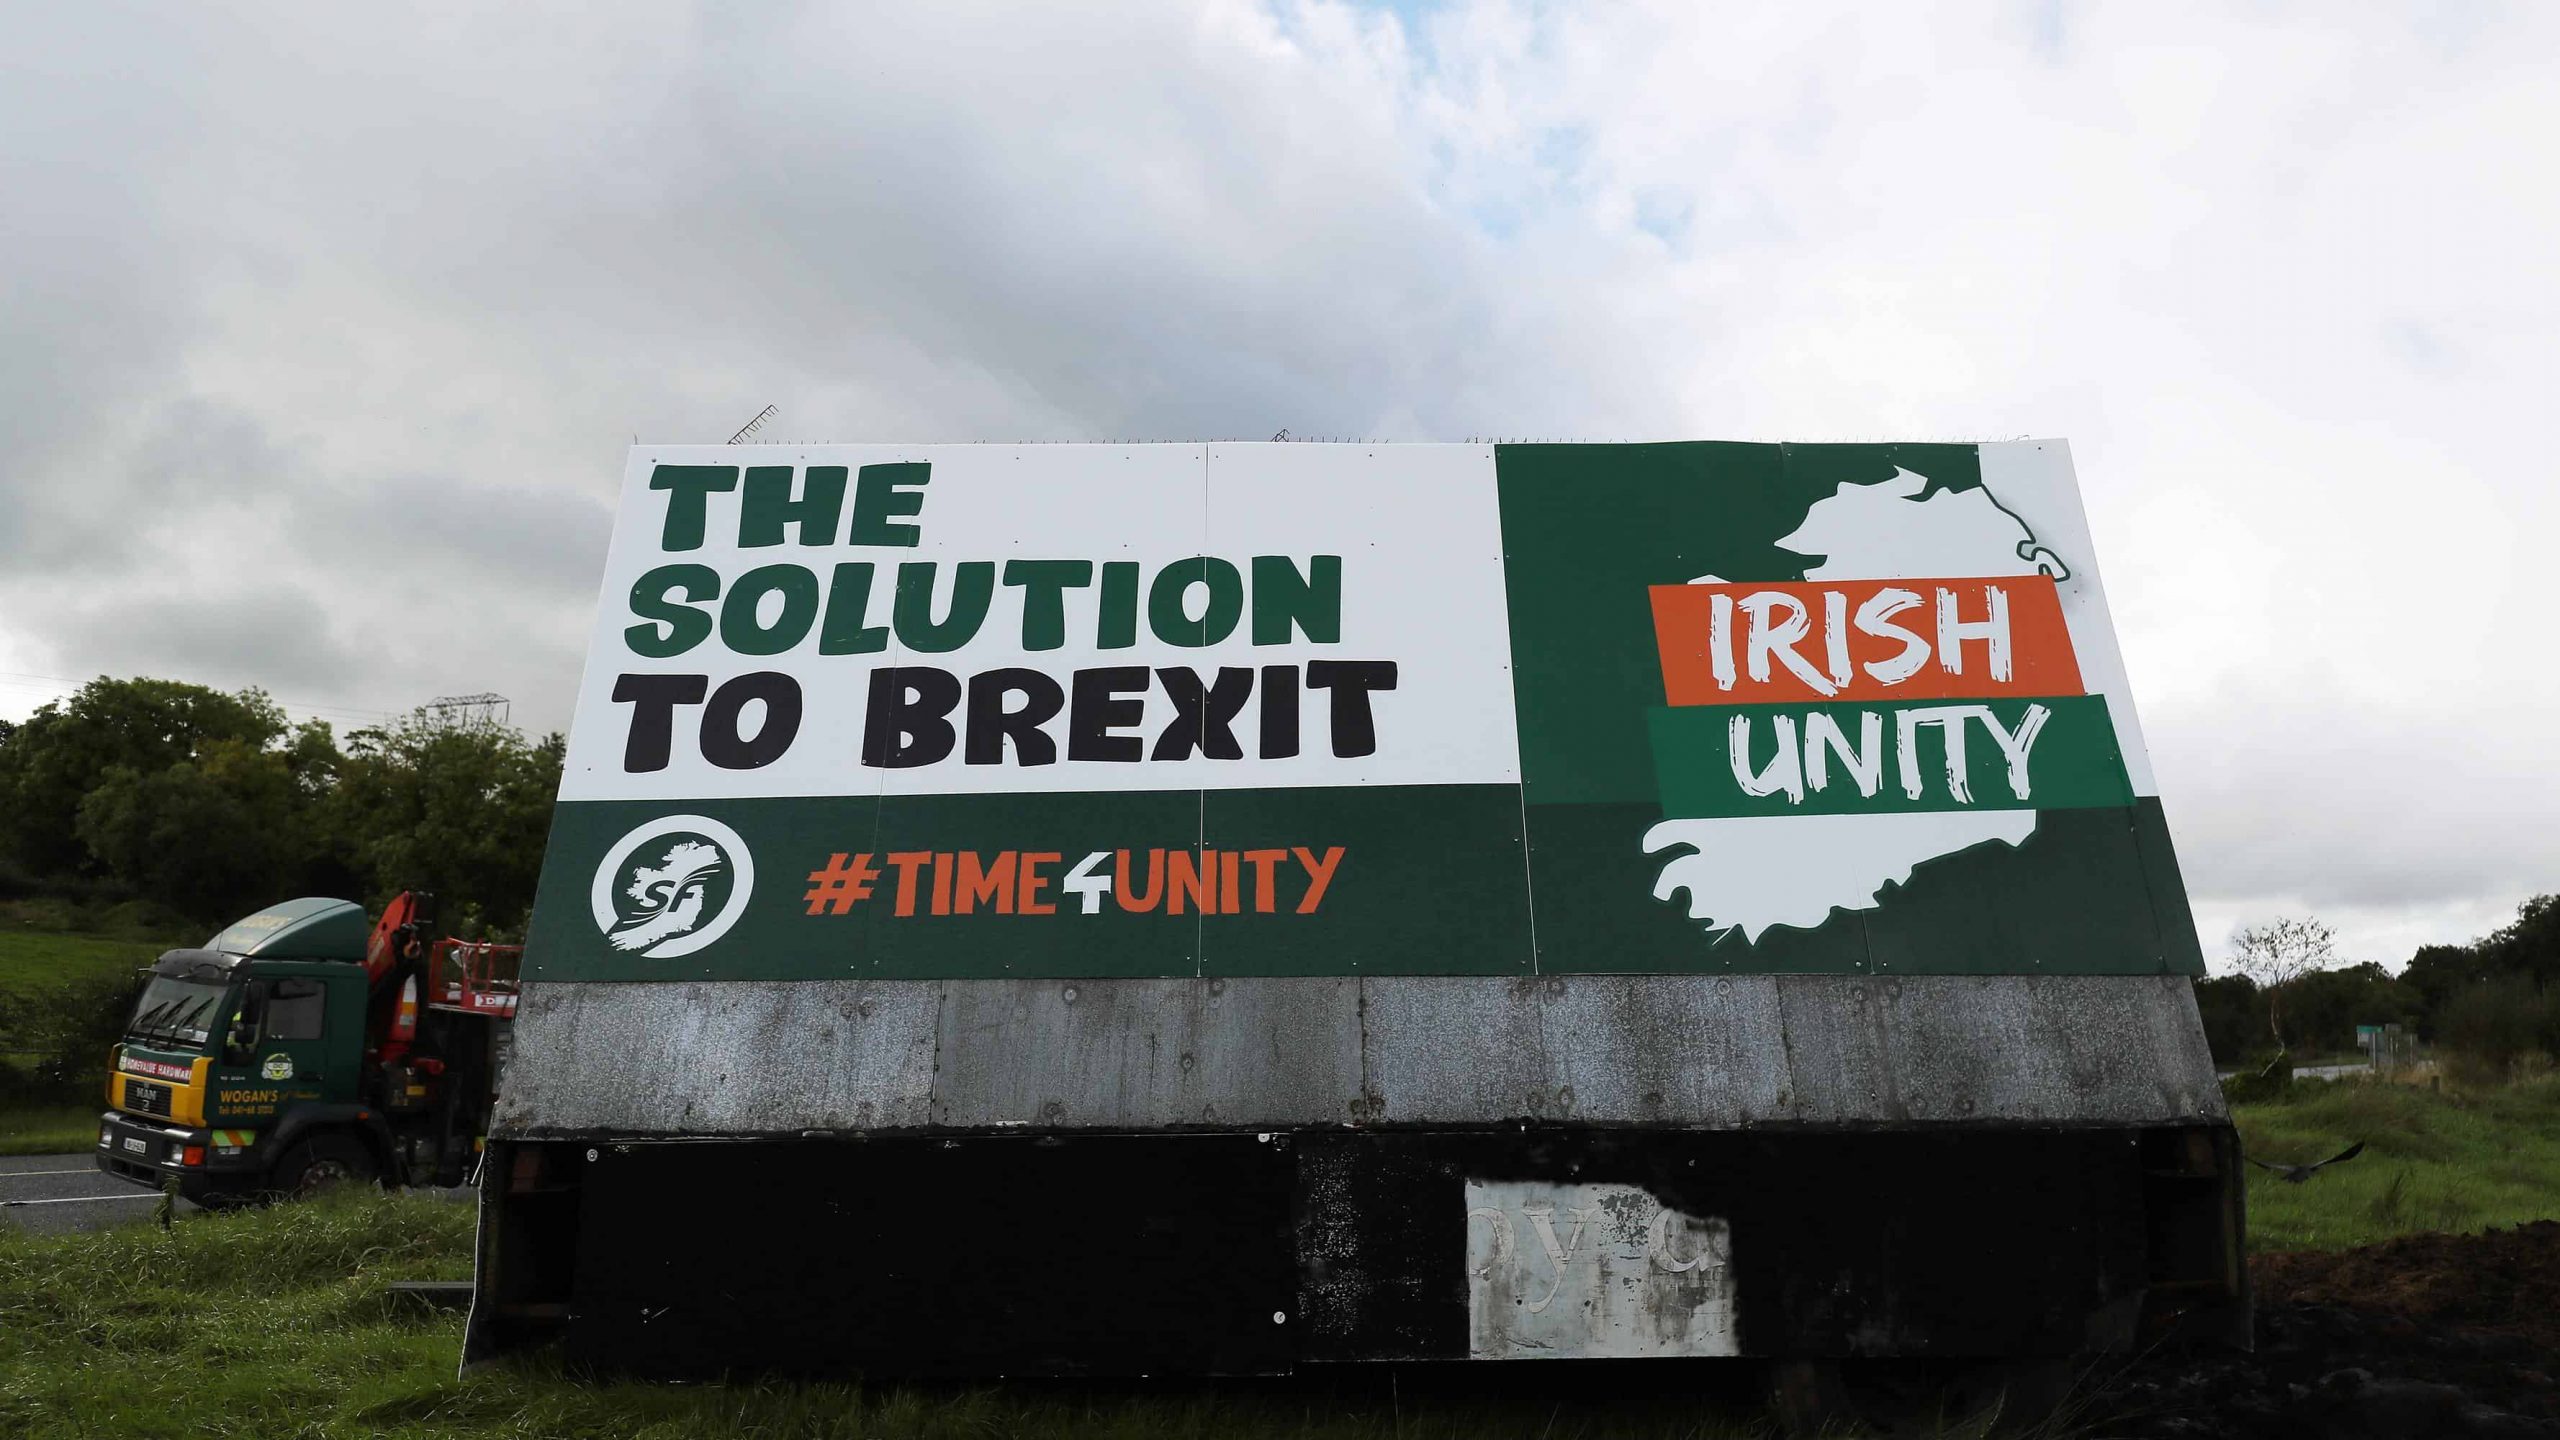 European Union free to promote Irish unity, Sinn Fein MEP claims